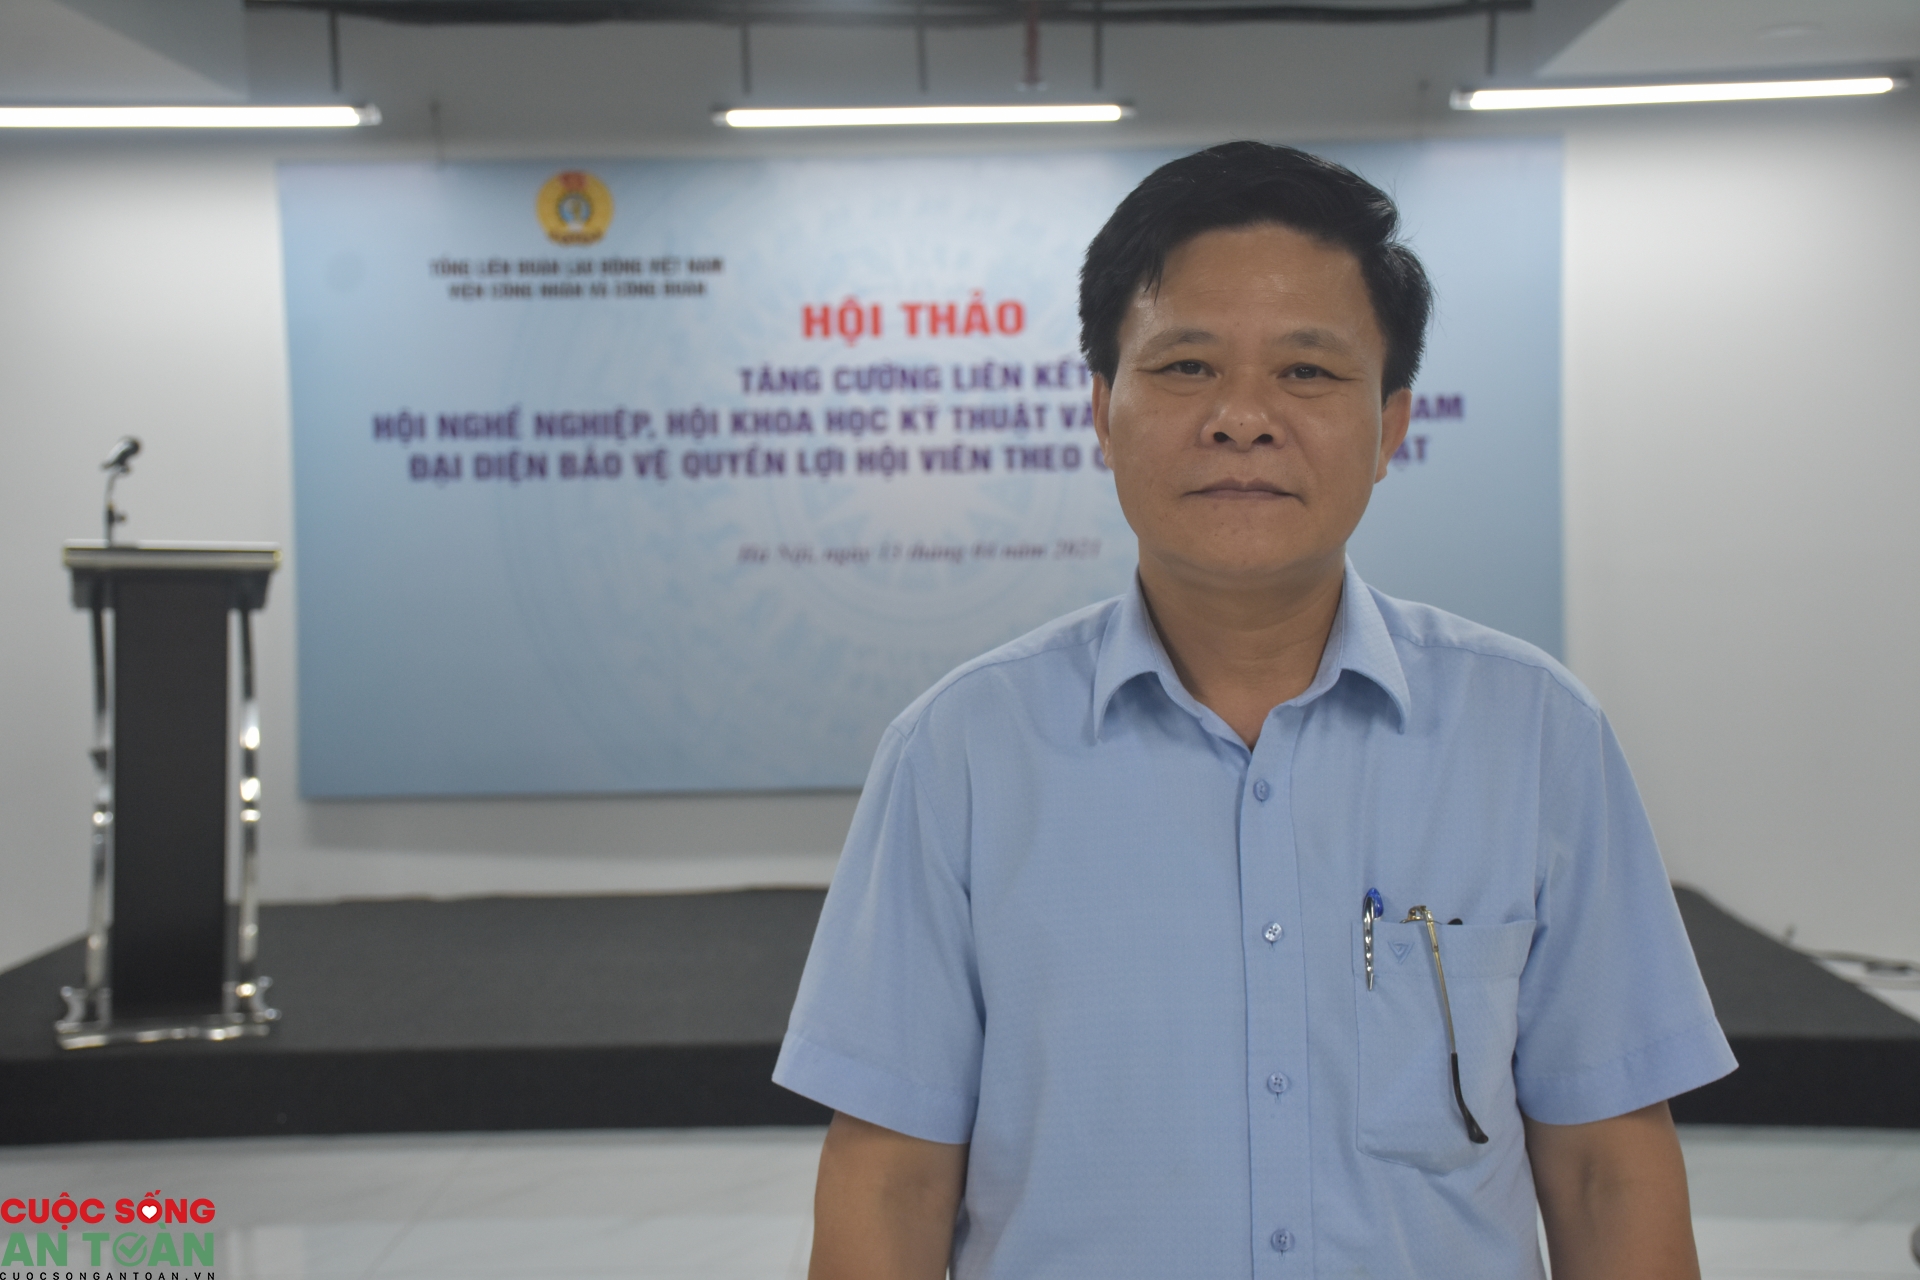 Tăng cường liên kết giữa Công đoàn Việt Nam với hội nghề nghiệp và hội KHKT